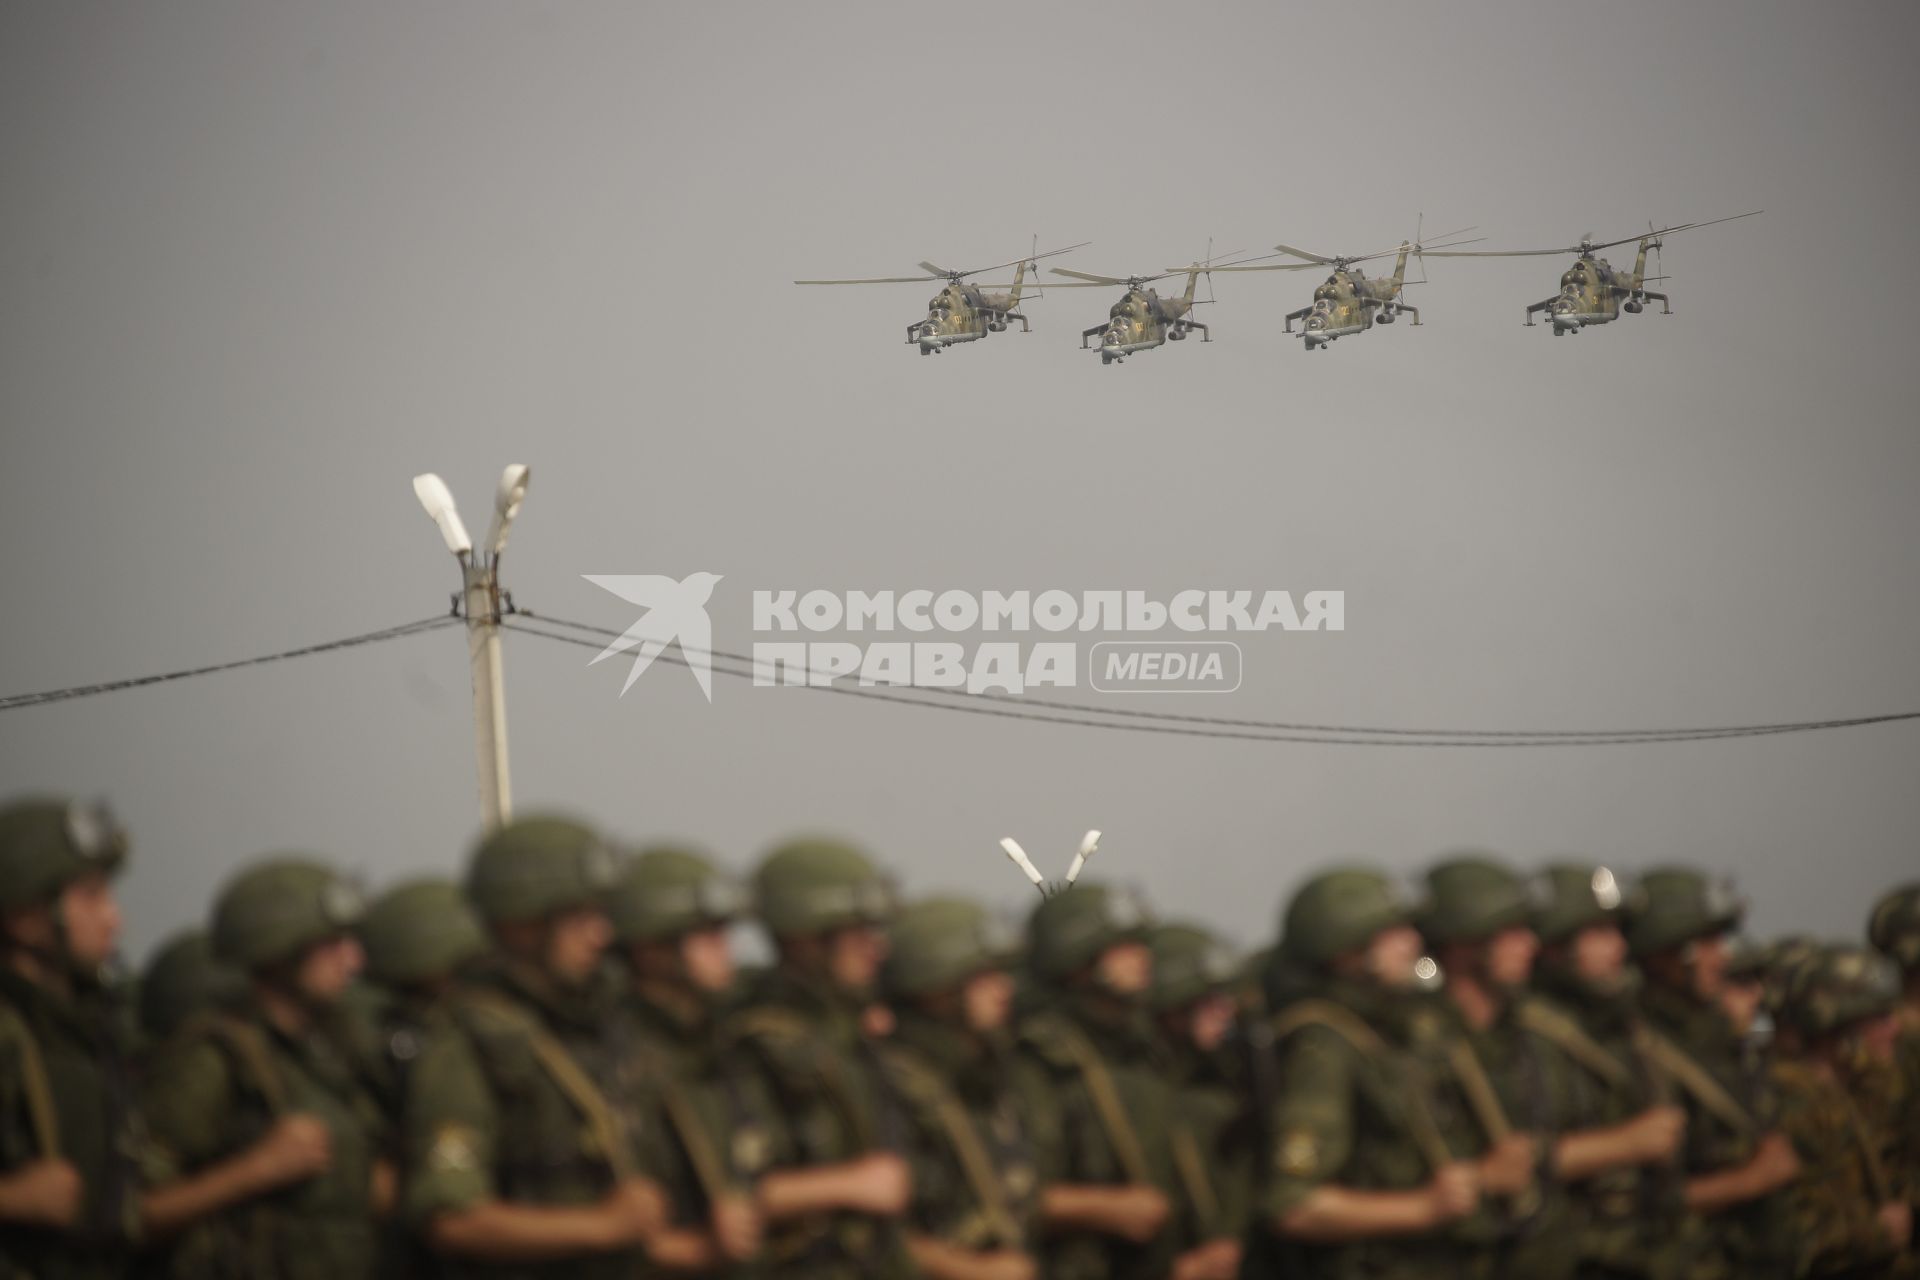 Российские боевые вертолеты ми-24 летят над строем Российских военный  во время проведения Российско-Китайских учений Мирная миссия 2013 на полигоне в Чебаркуле